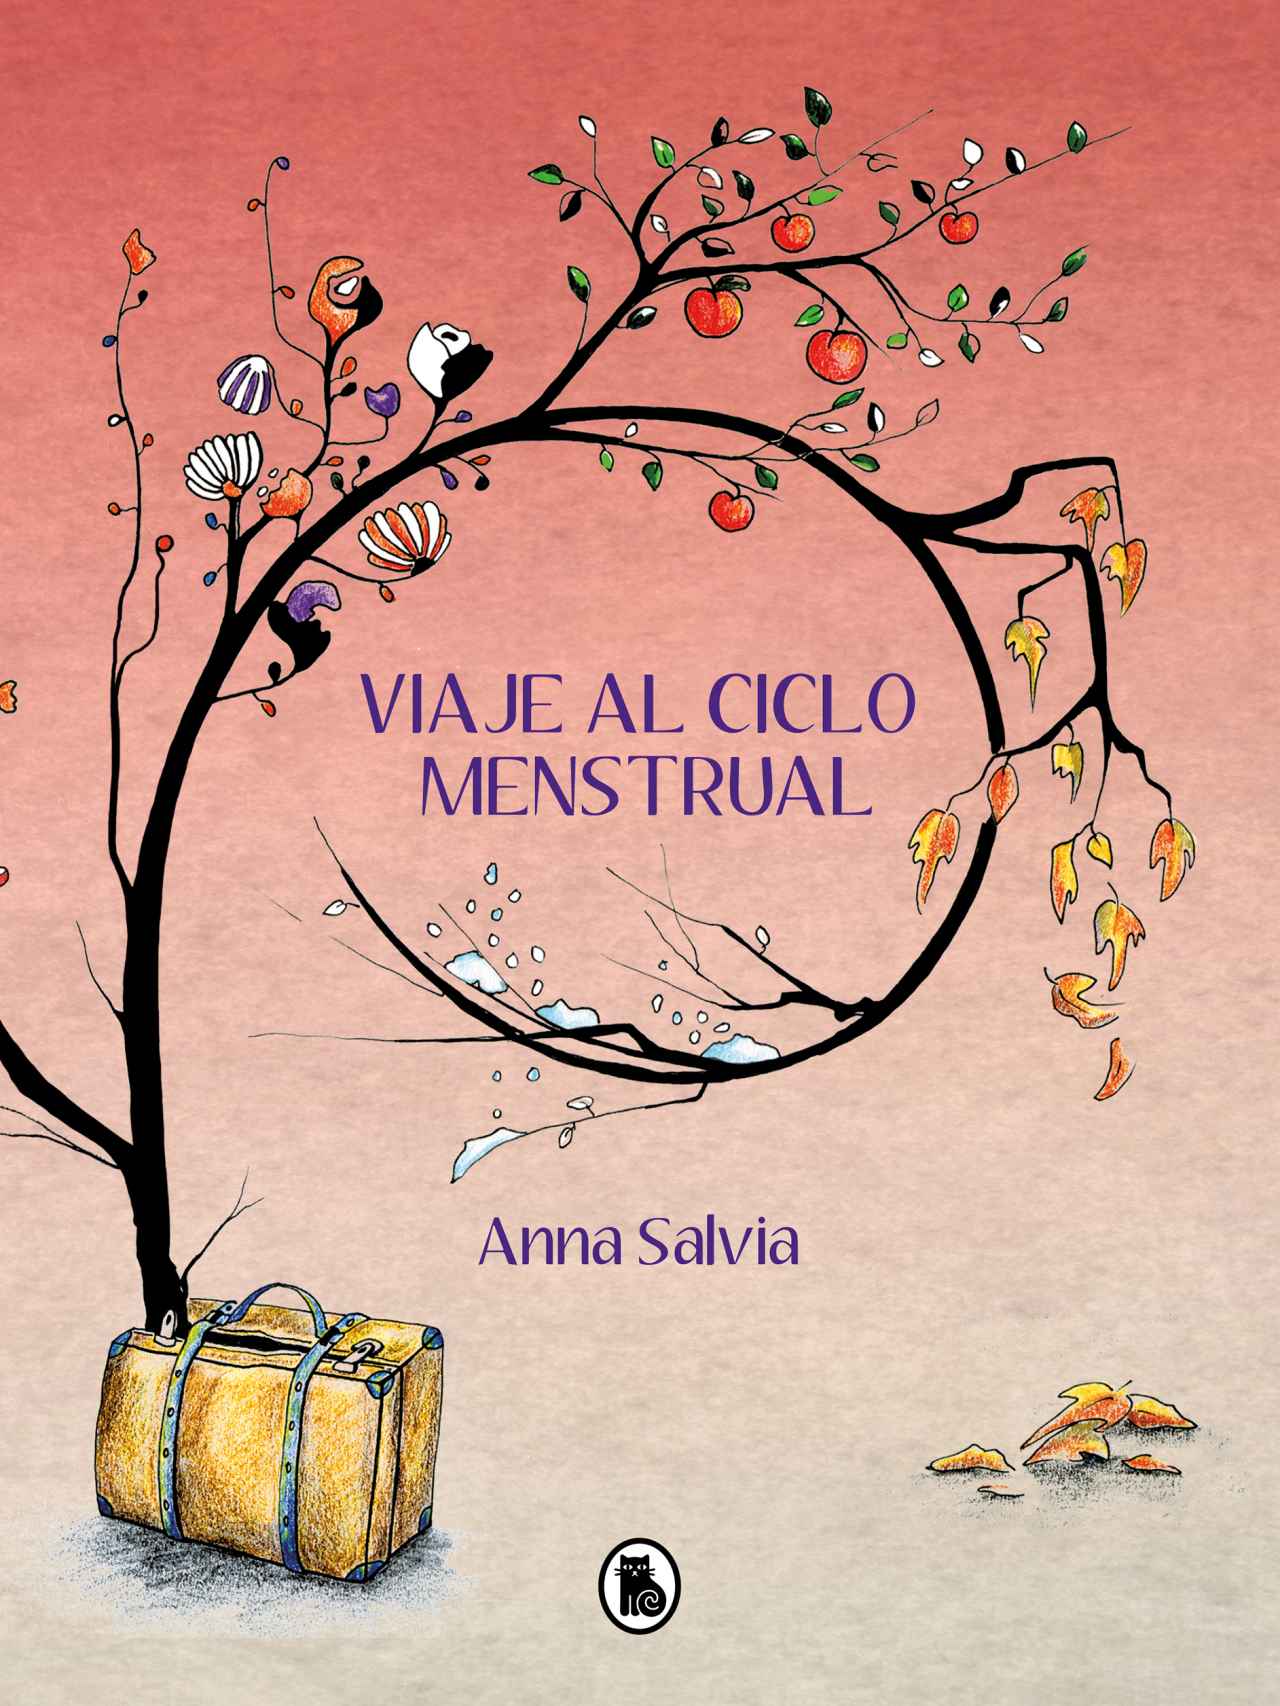 Portada del libro 'Viaje al ciclo menstrual' de Anna Salvia.